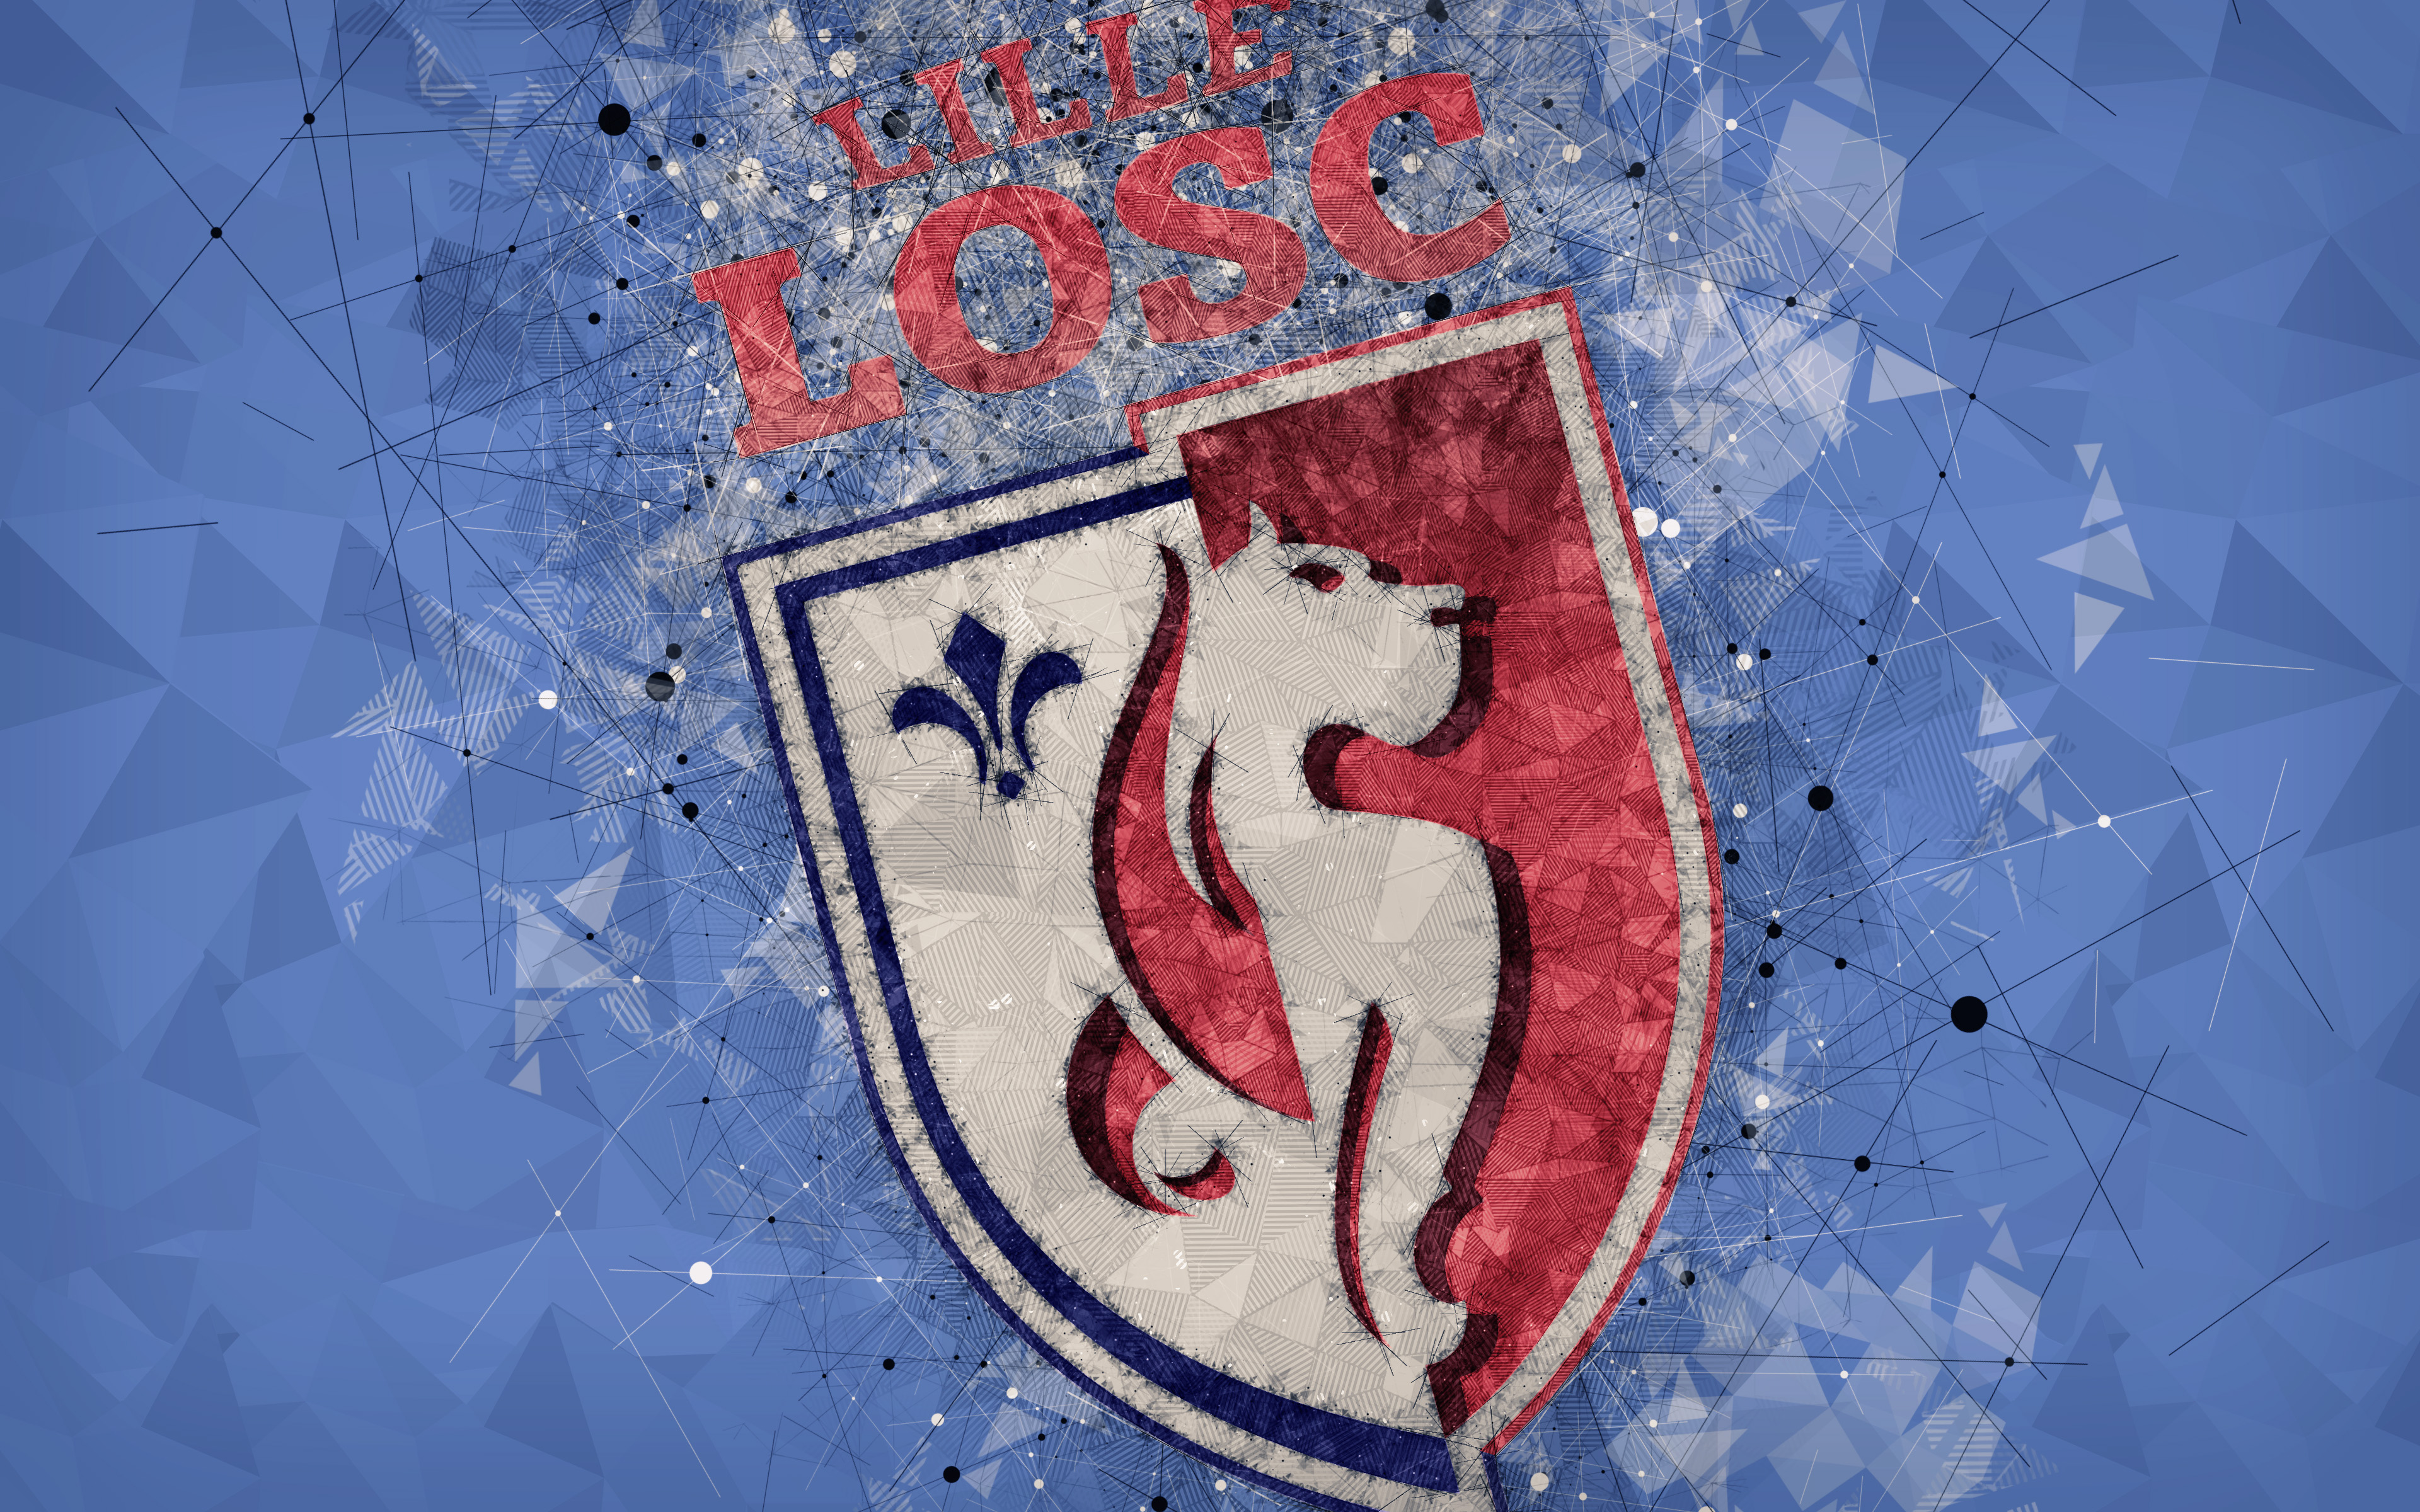 Download mobile wallpaper Sports, Logo, Emblem, Soccer, Lille Osc for free.